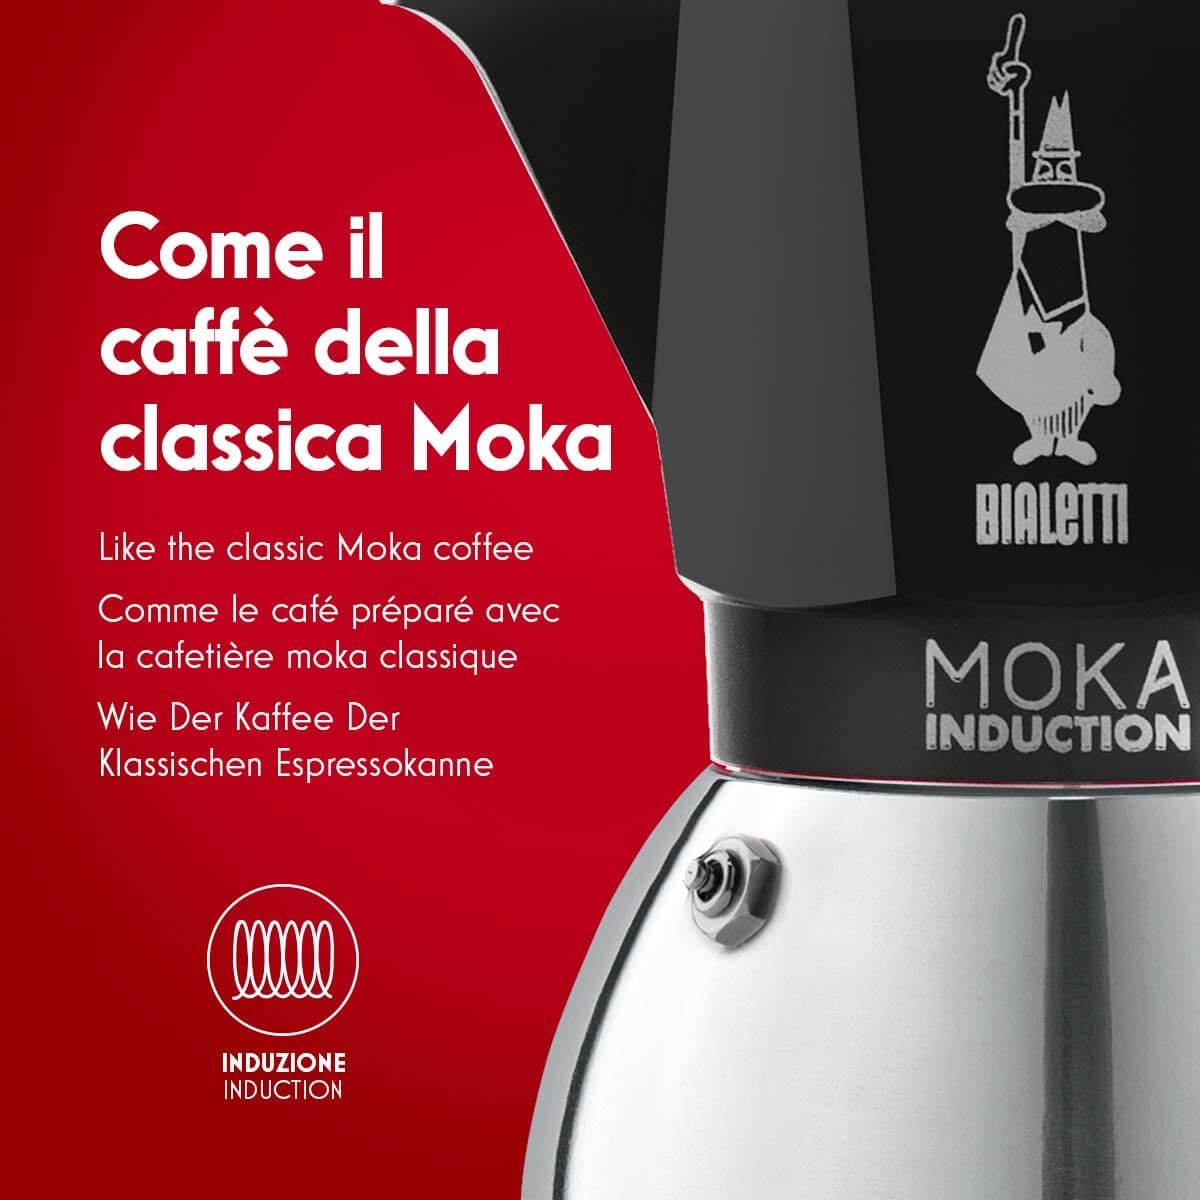 Bialetti Moka Induction Cafetera Italiana Espresso por Inducción